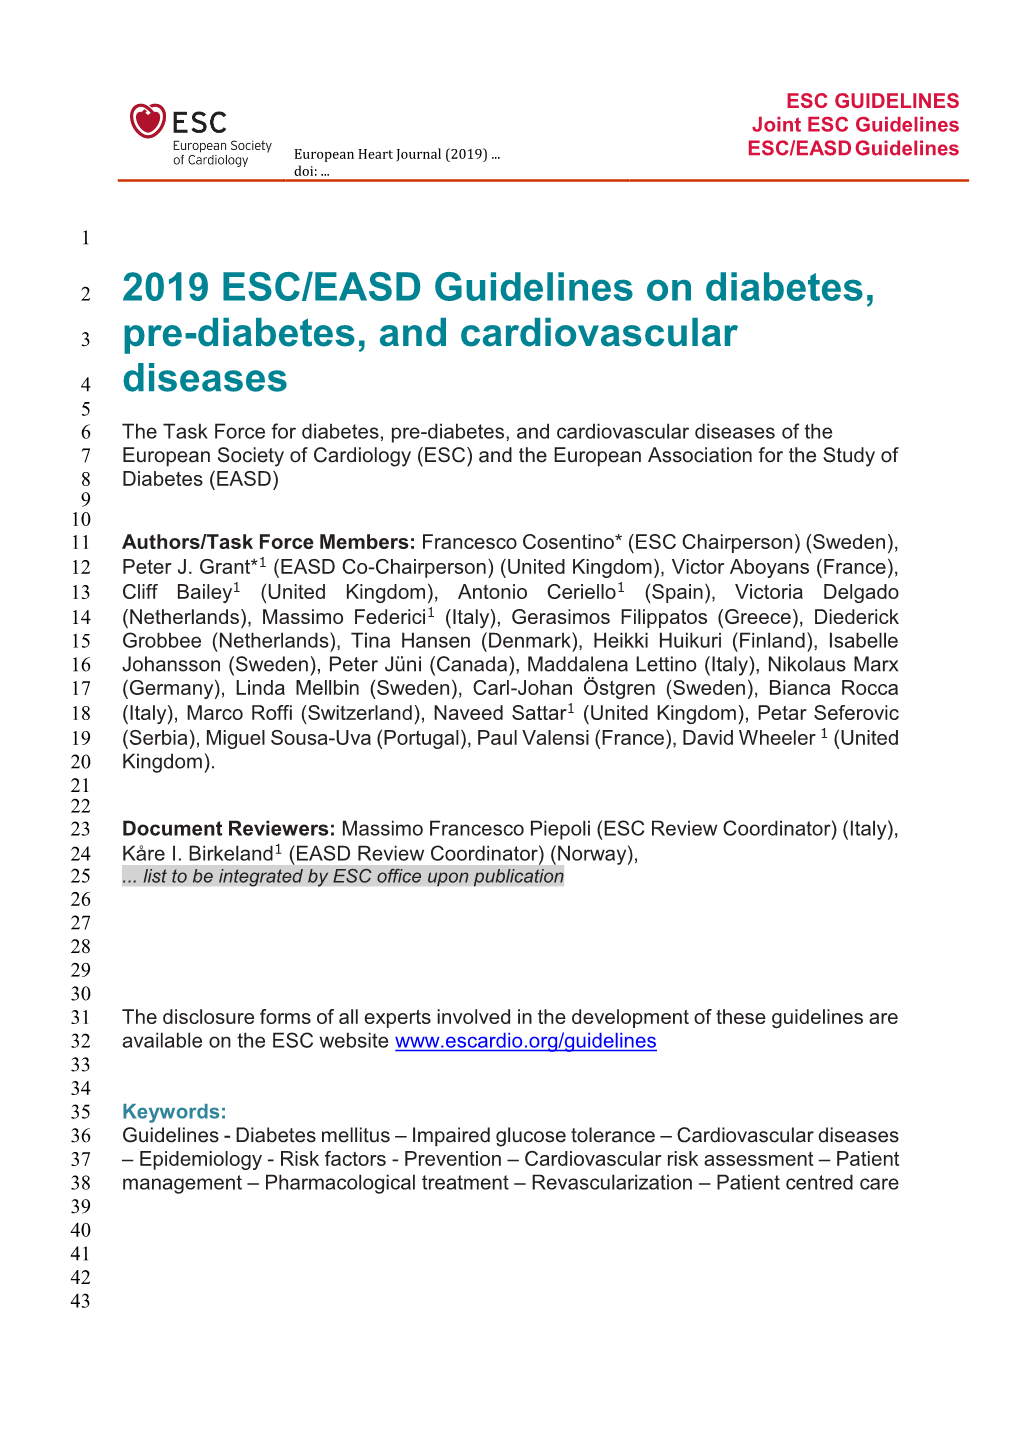 2019 ESC/EASD Guidelines on Diabetes